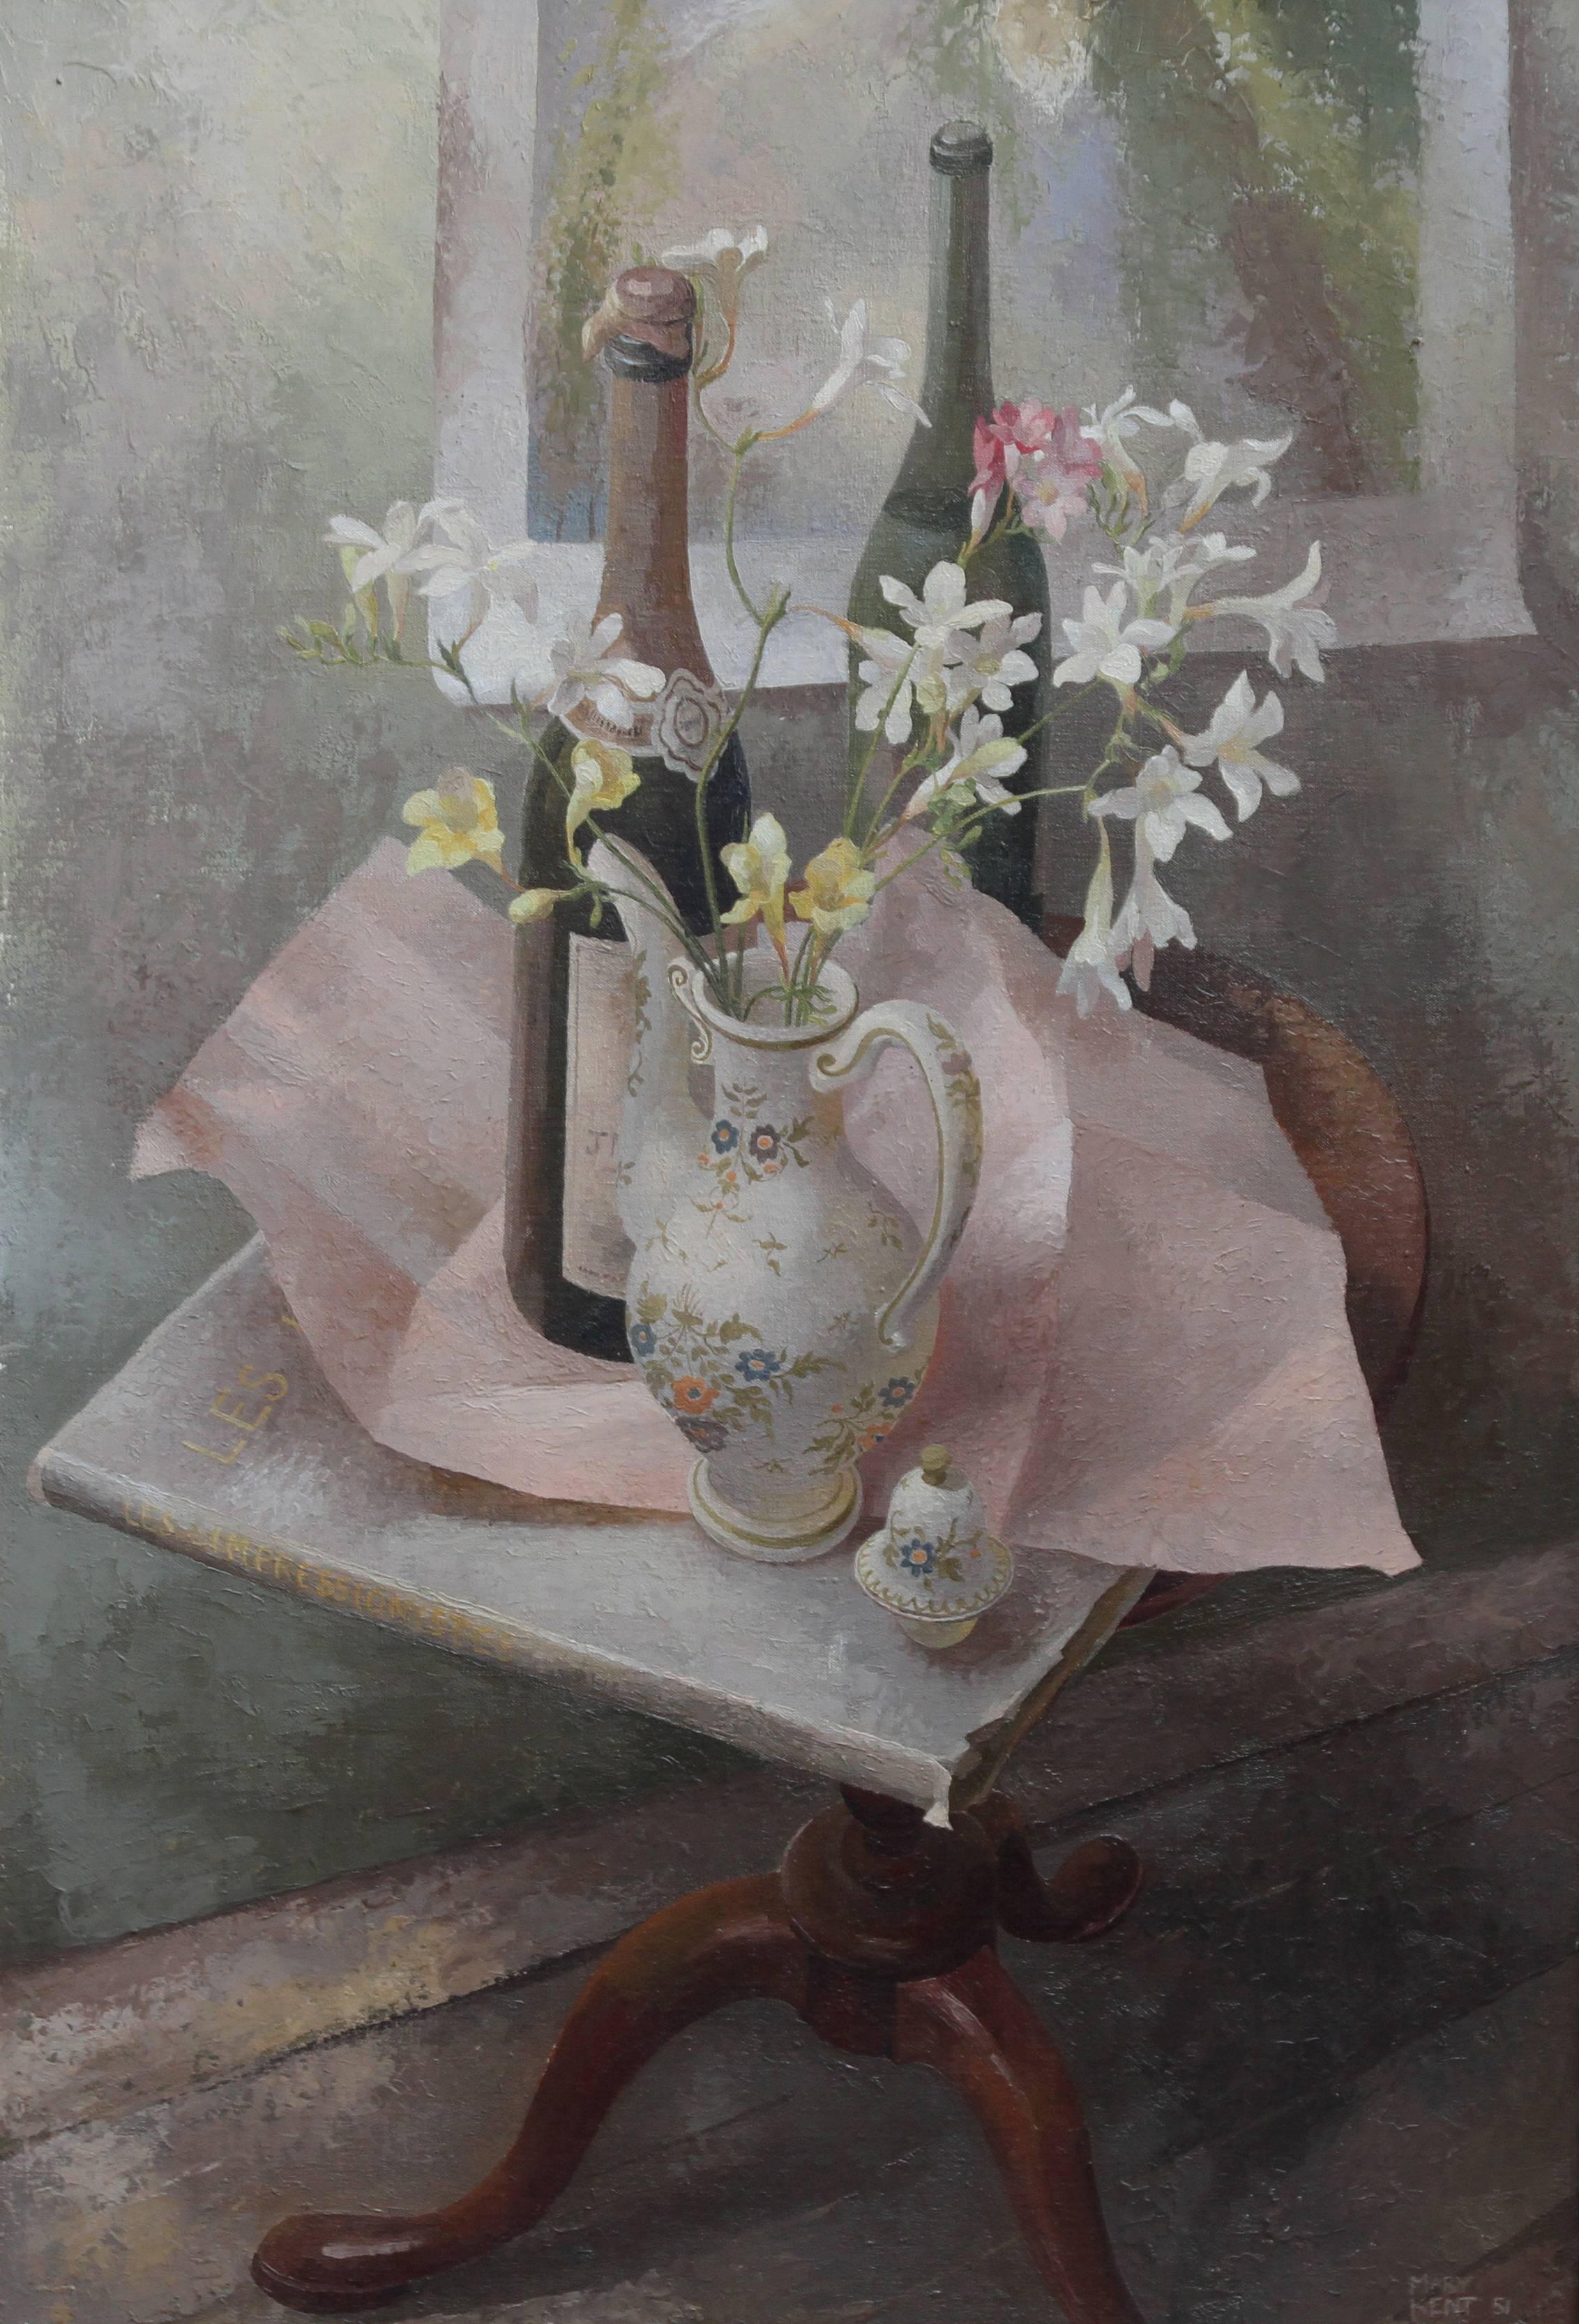 Französische Kaffeekanne – britische Ausstellungskunst 1960er Jahre, Blumenstillleben, Ölgemälde – Painting von Mary Kent Harrison